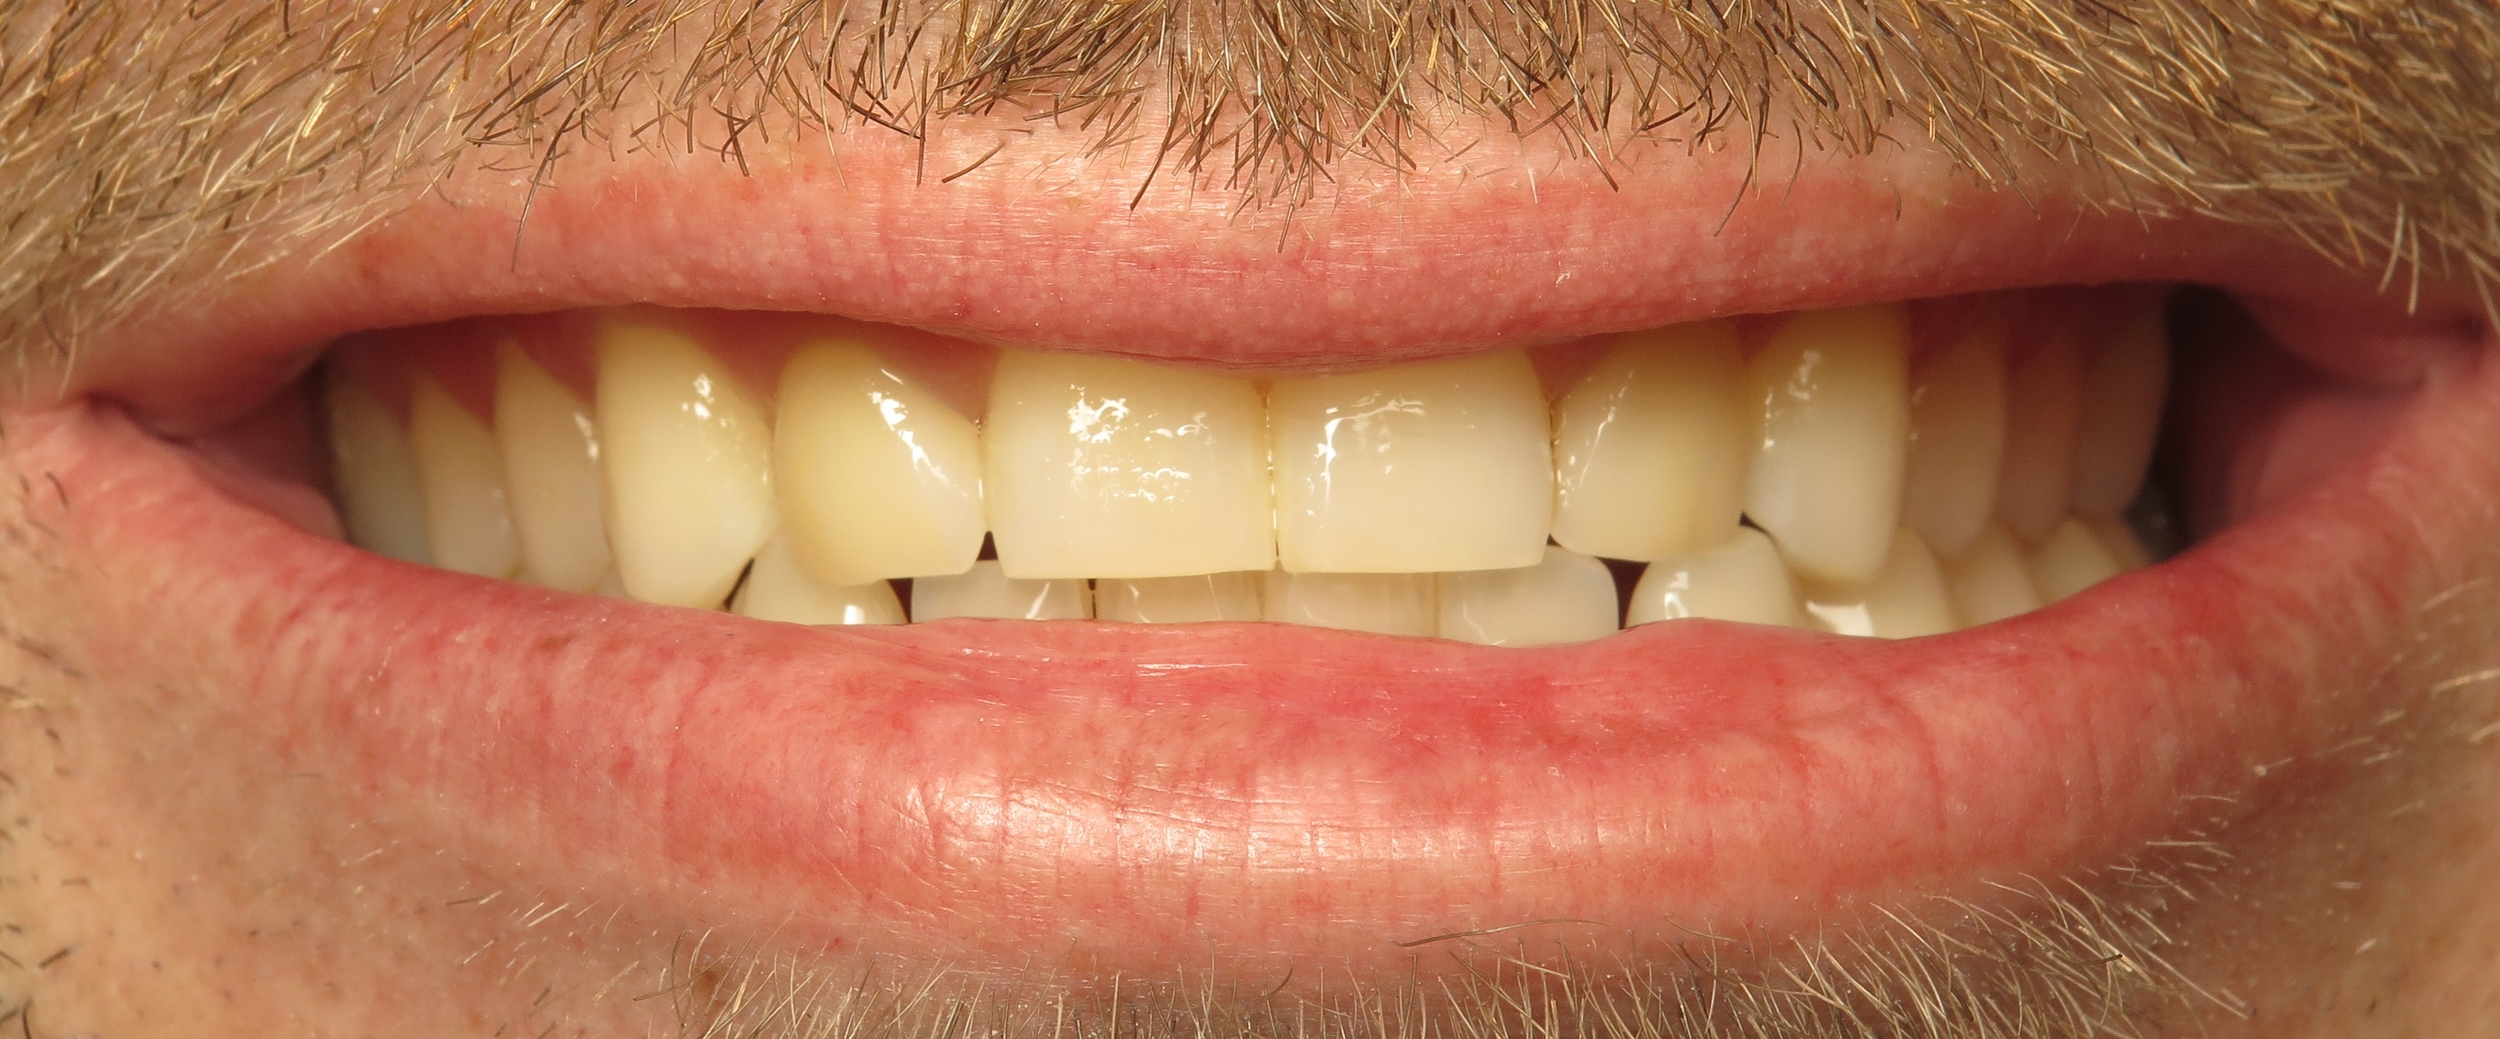 Thousand Oaks Family Dentistry - Golden Proportion Case 2 lip framed smile.JPG